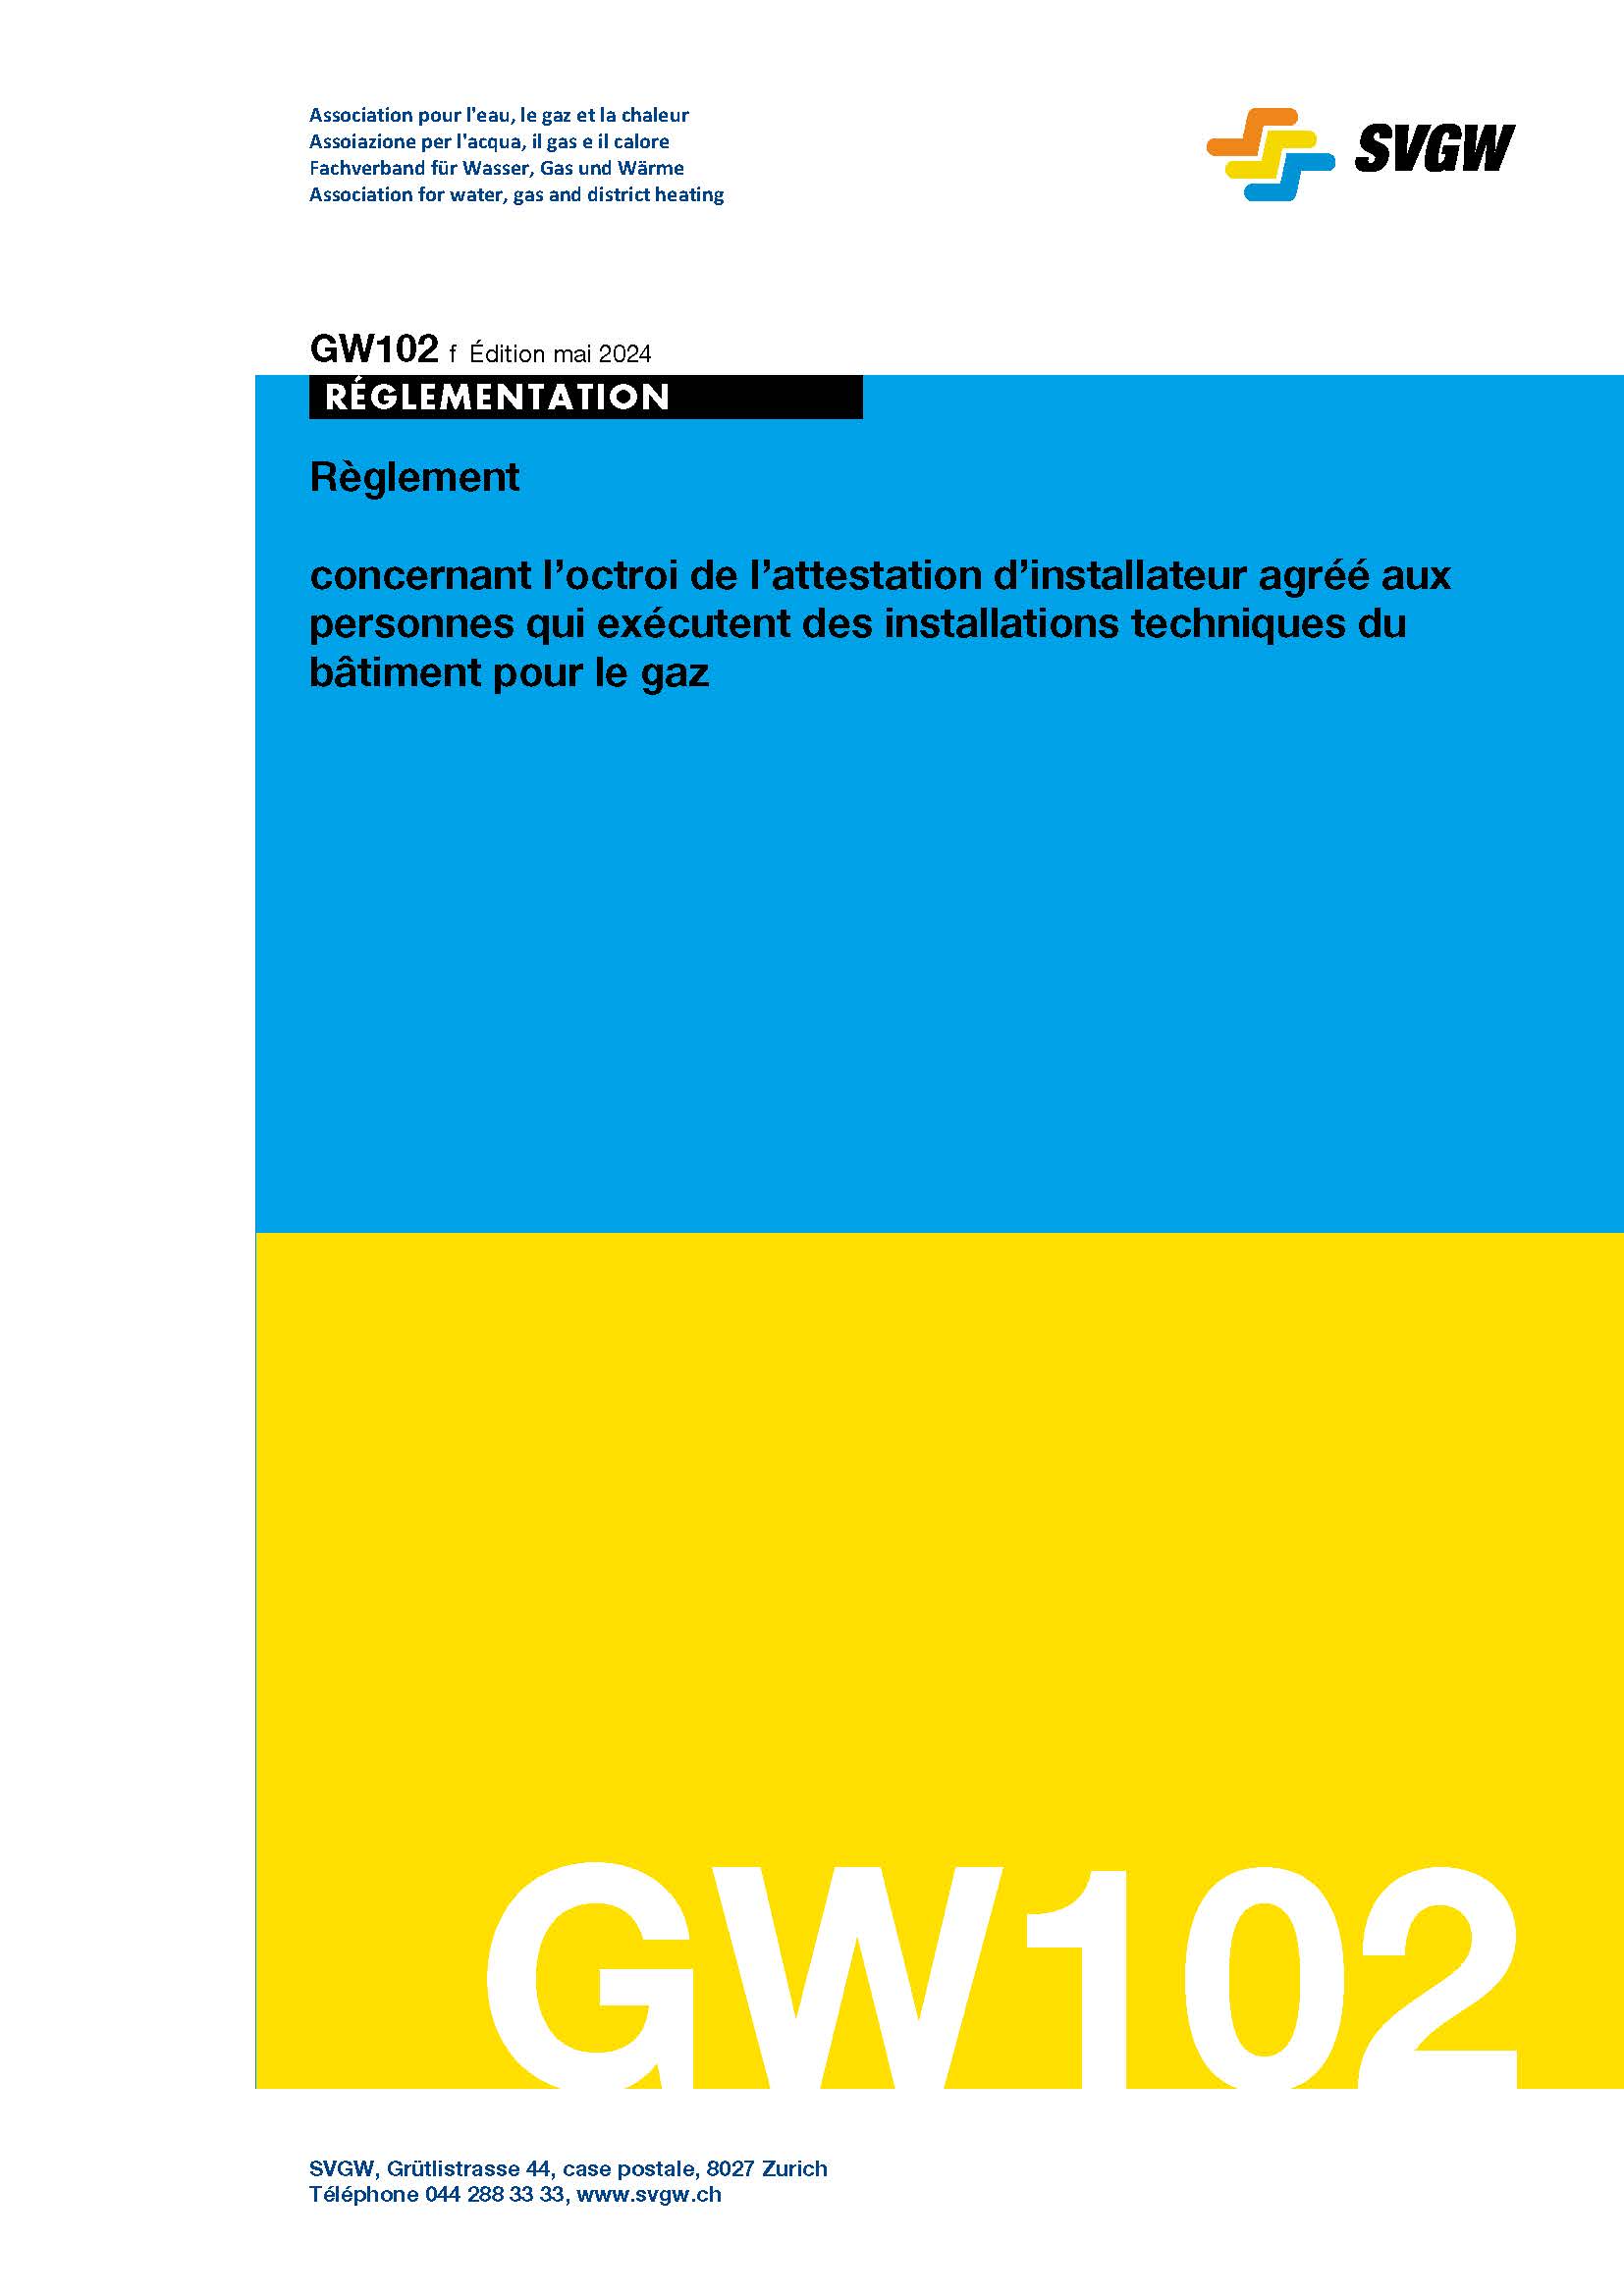 GW102 f Règlement concernant l'octroi de l'attestation d'installateur agréé aux personnes qui exécutent des installations techniques du bâtiment pour le gaz